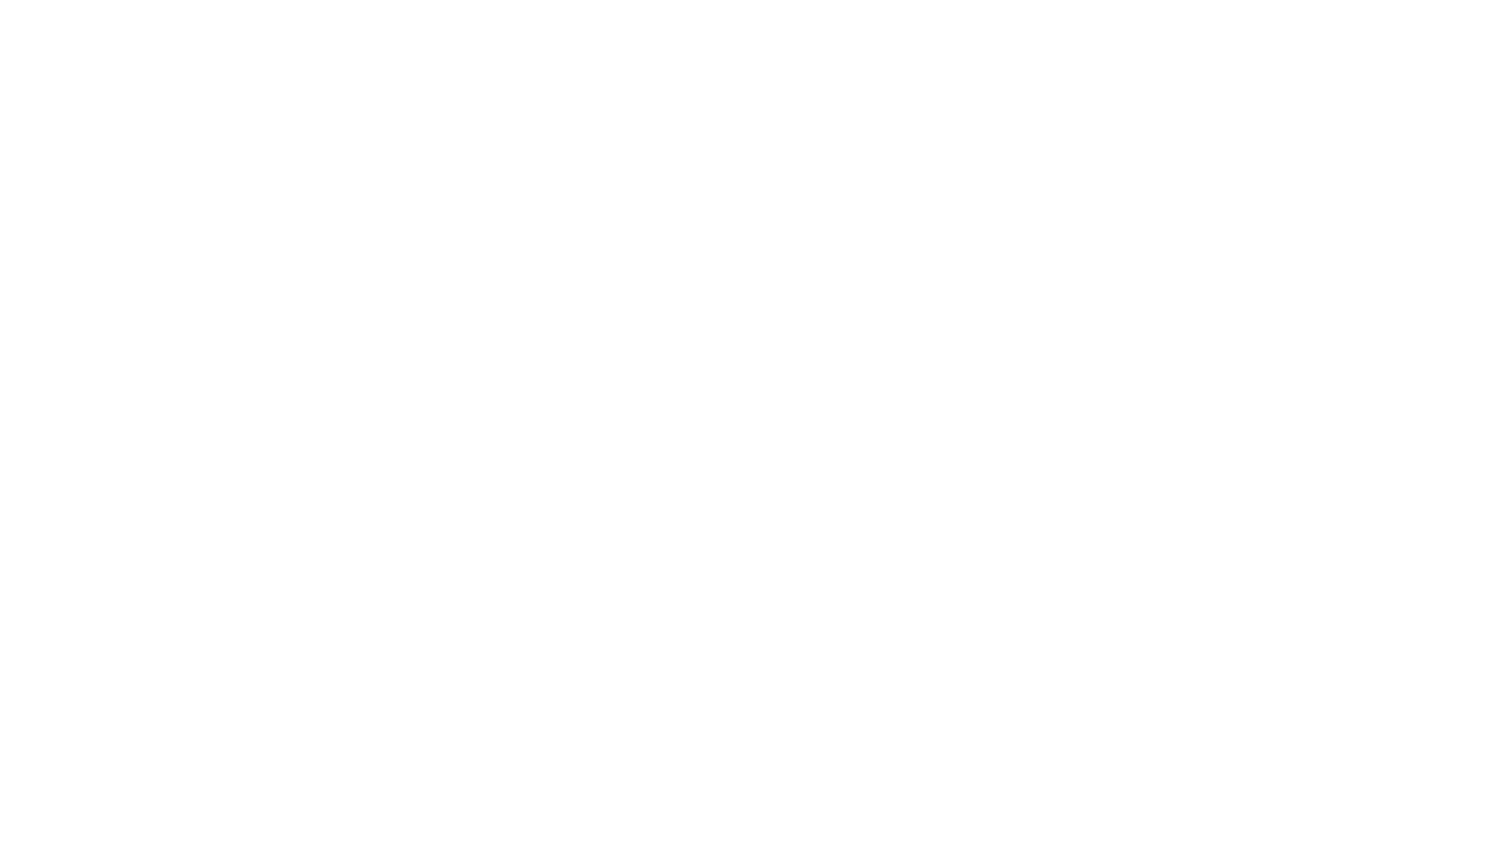 Odenton Lodge No. 209 A.F.& A.M.